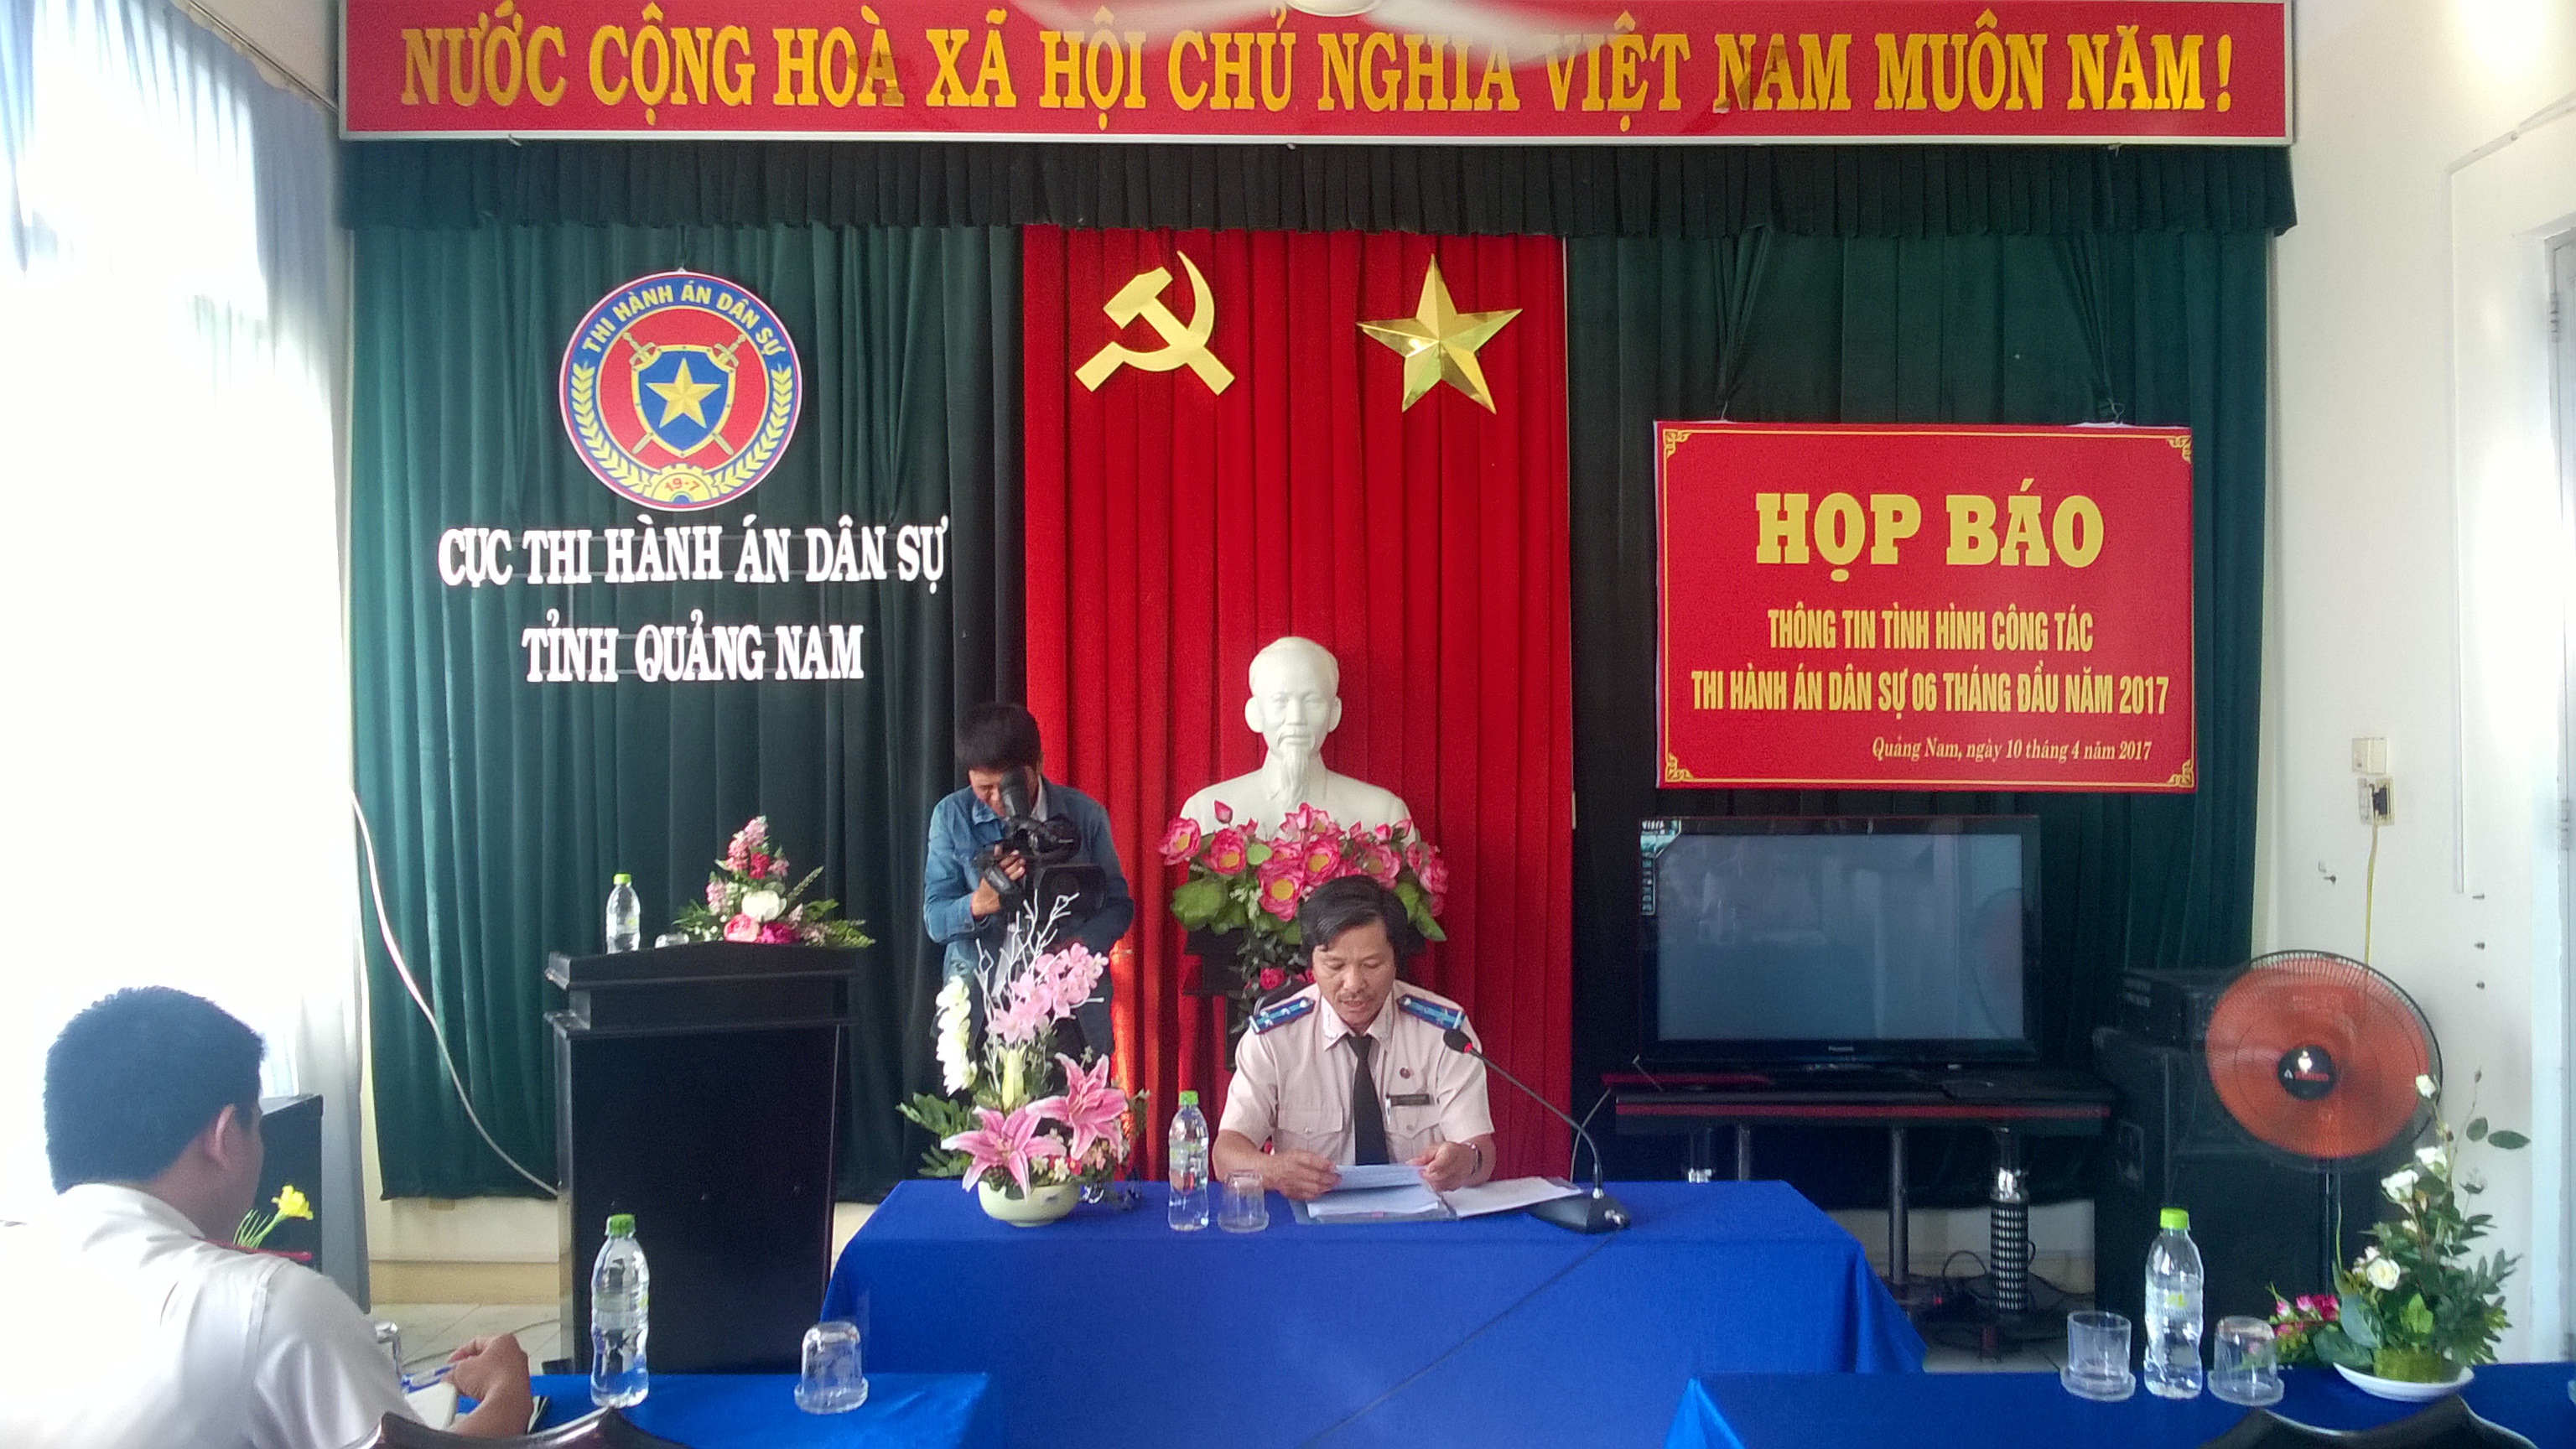 Cục Thi hành án dân sự tỉnh Quảng Nam tổ chức họp báo công tác thi hành án dân sự 6 tháng đầu năm 2017